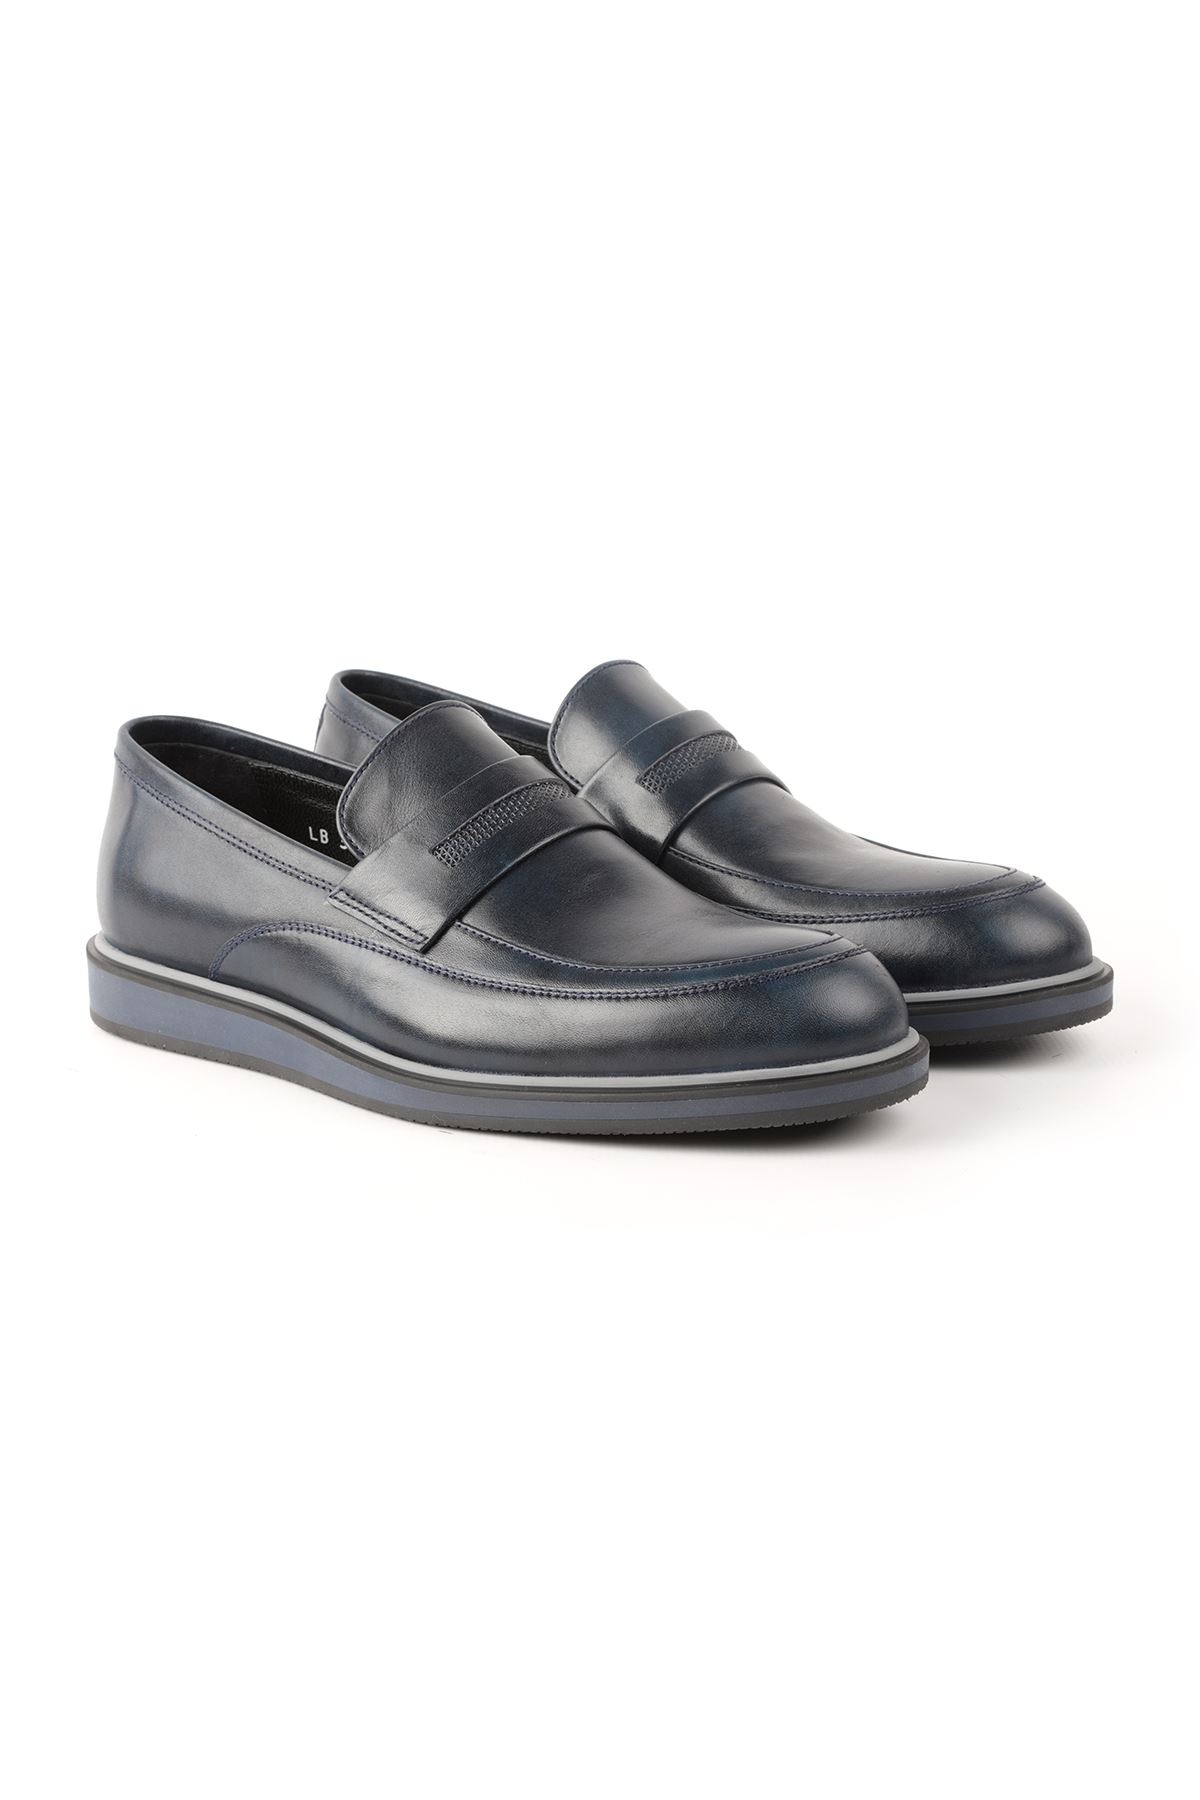 Libero L3668 Navy Blue Loafer Men's Shoes